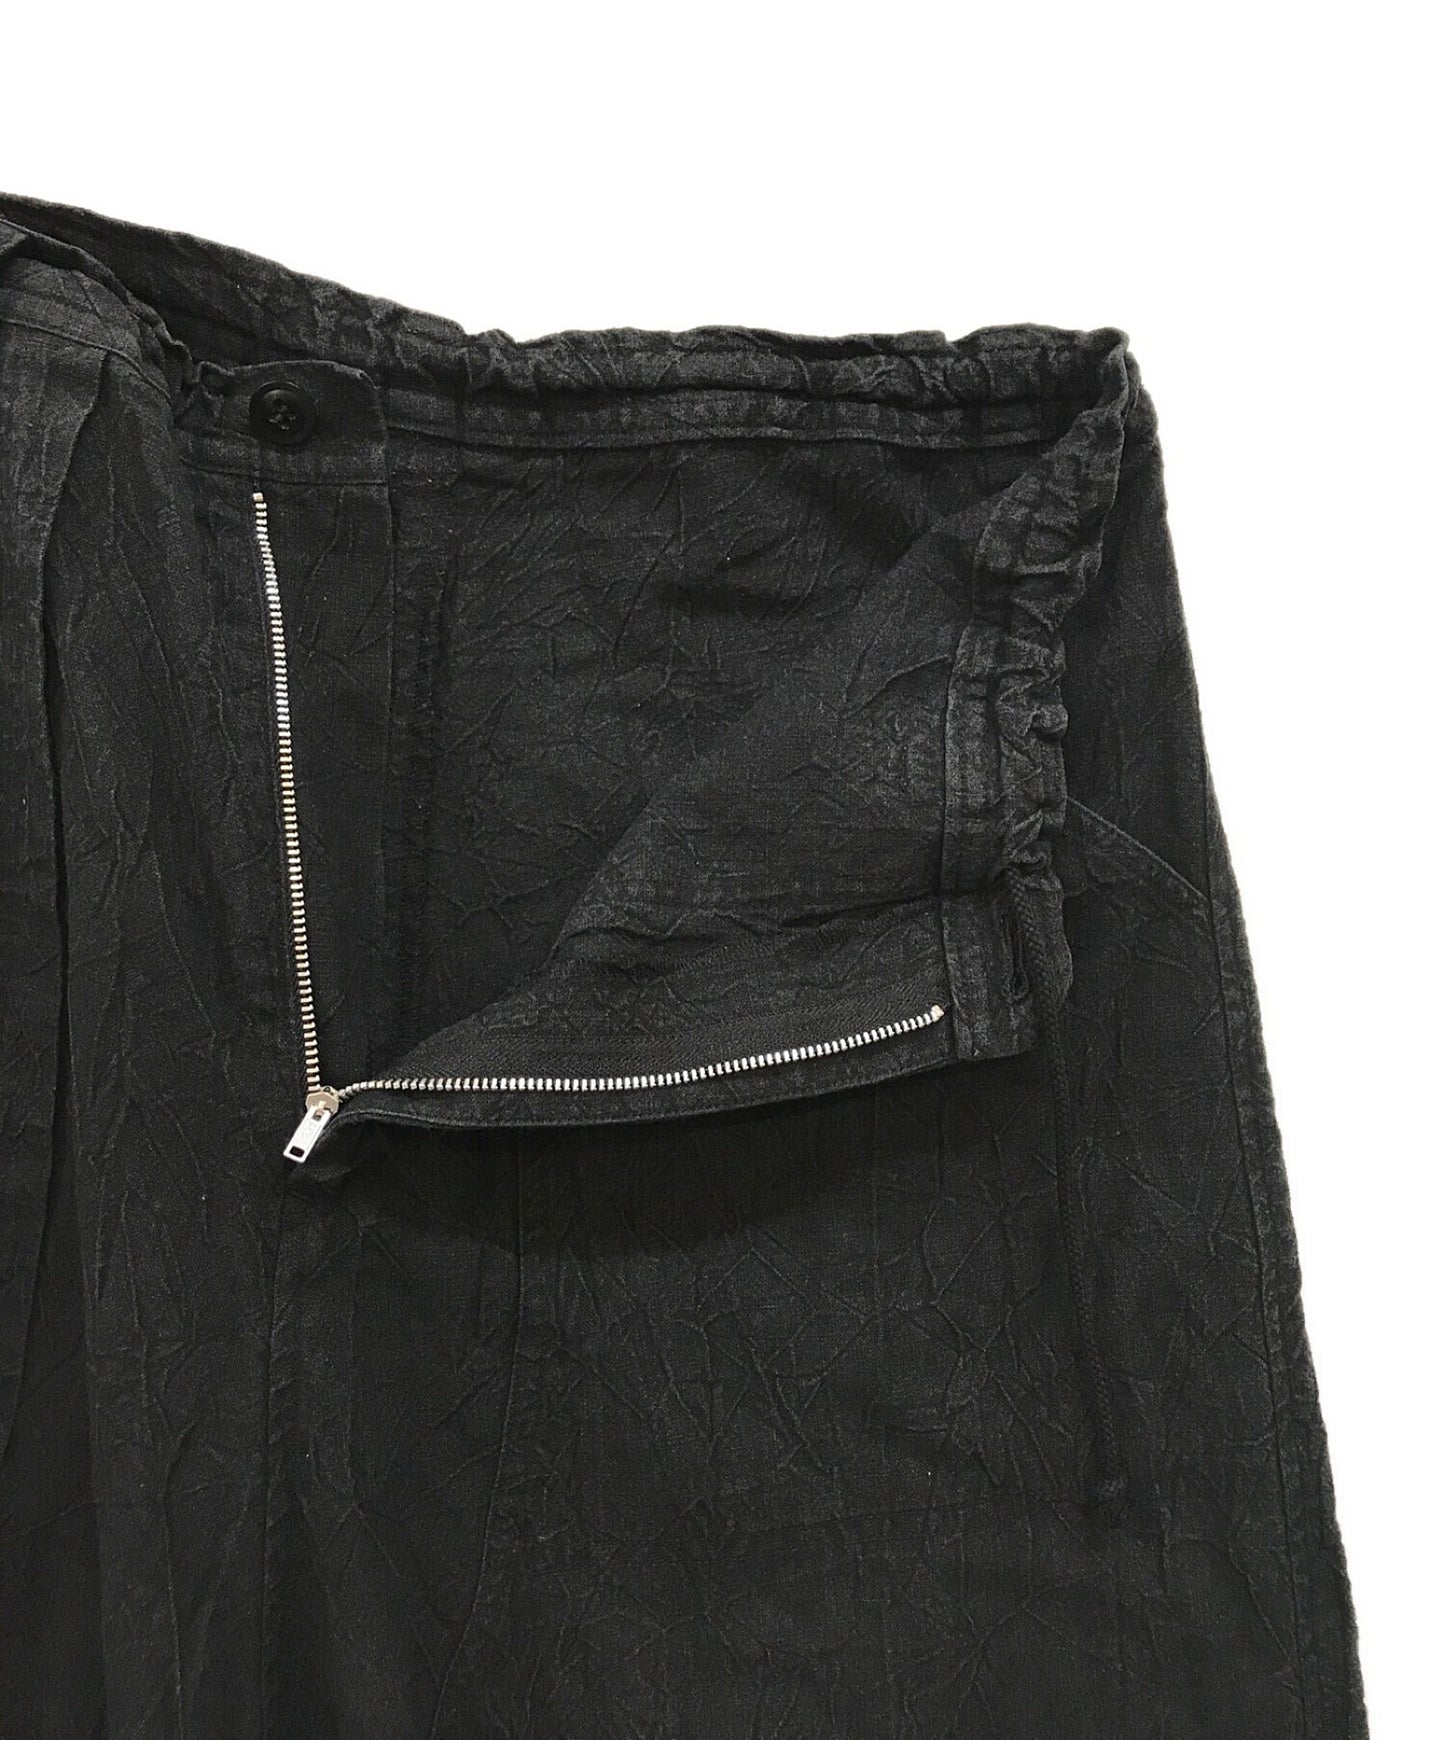 กางเกงในกระเป๋าอสมมาตรของ Y YG-P12-301